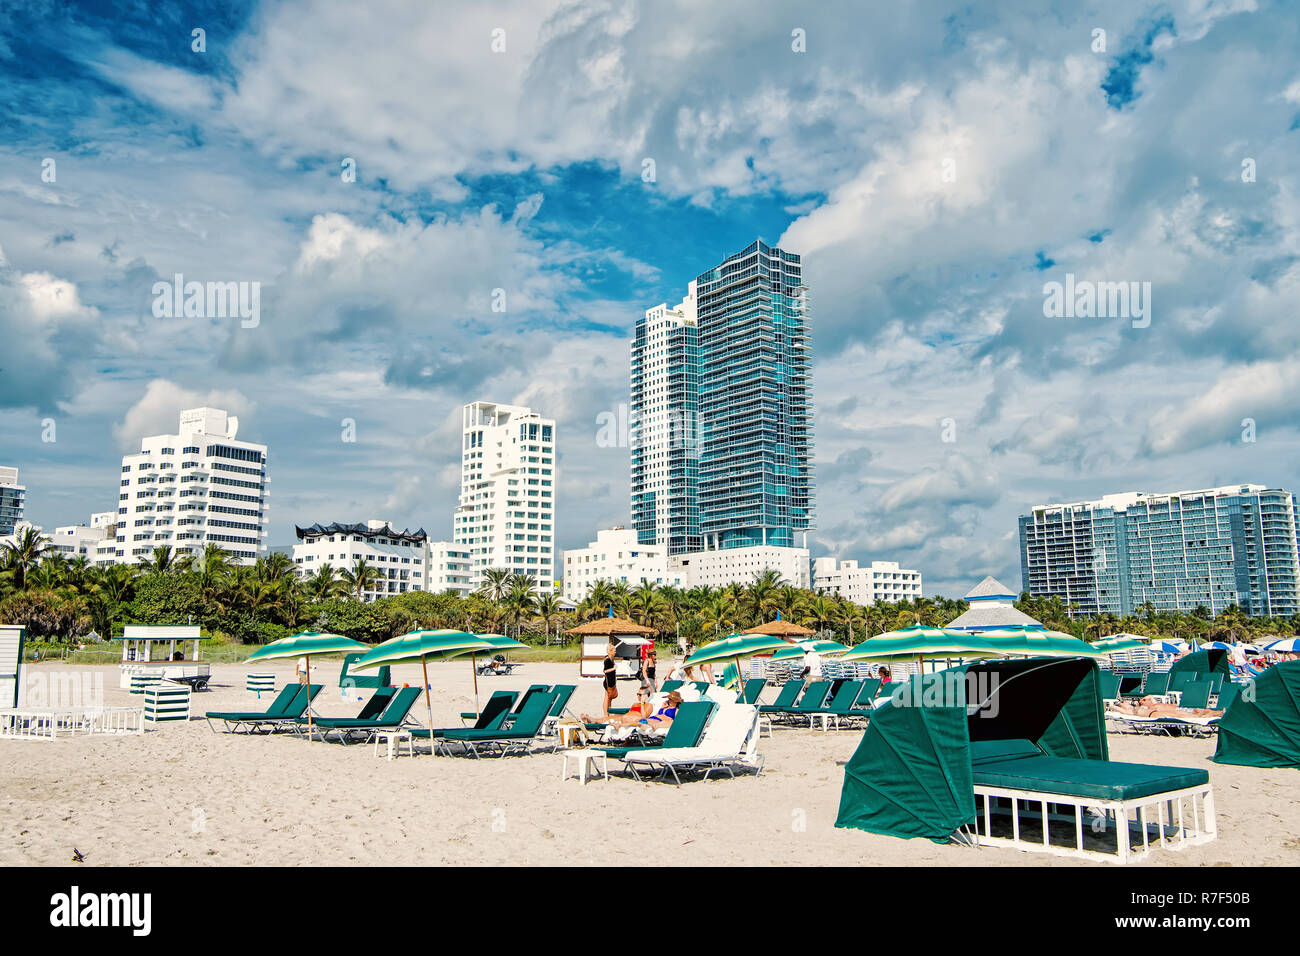 Miami, USA - Januar 10, 2016: Sandstrand mit Menschen entspannend auf Liegestühlen unter Sonnenschirmen Grün, Palmen, trübe Blau sonnigen Himmel. Sommer Urlaub. Lounge und Freizeitaktivitäten, Miami Beach und South Beach Stockfoto